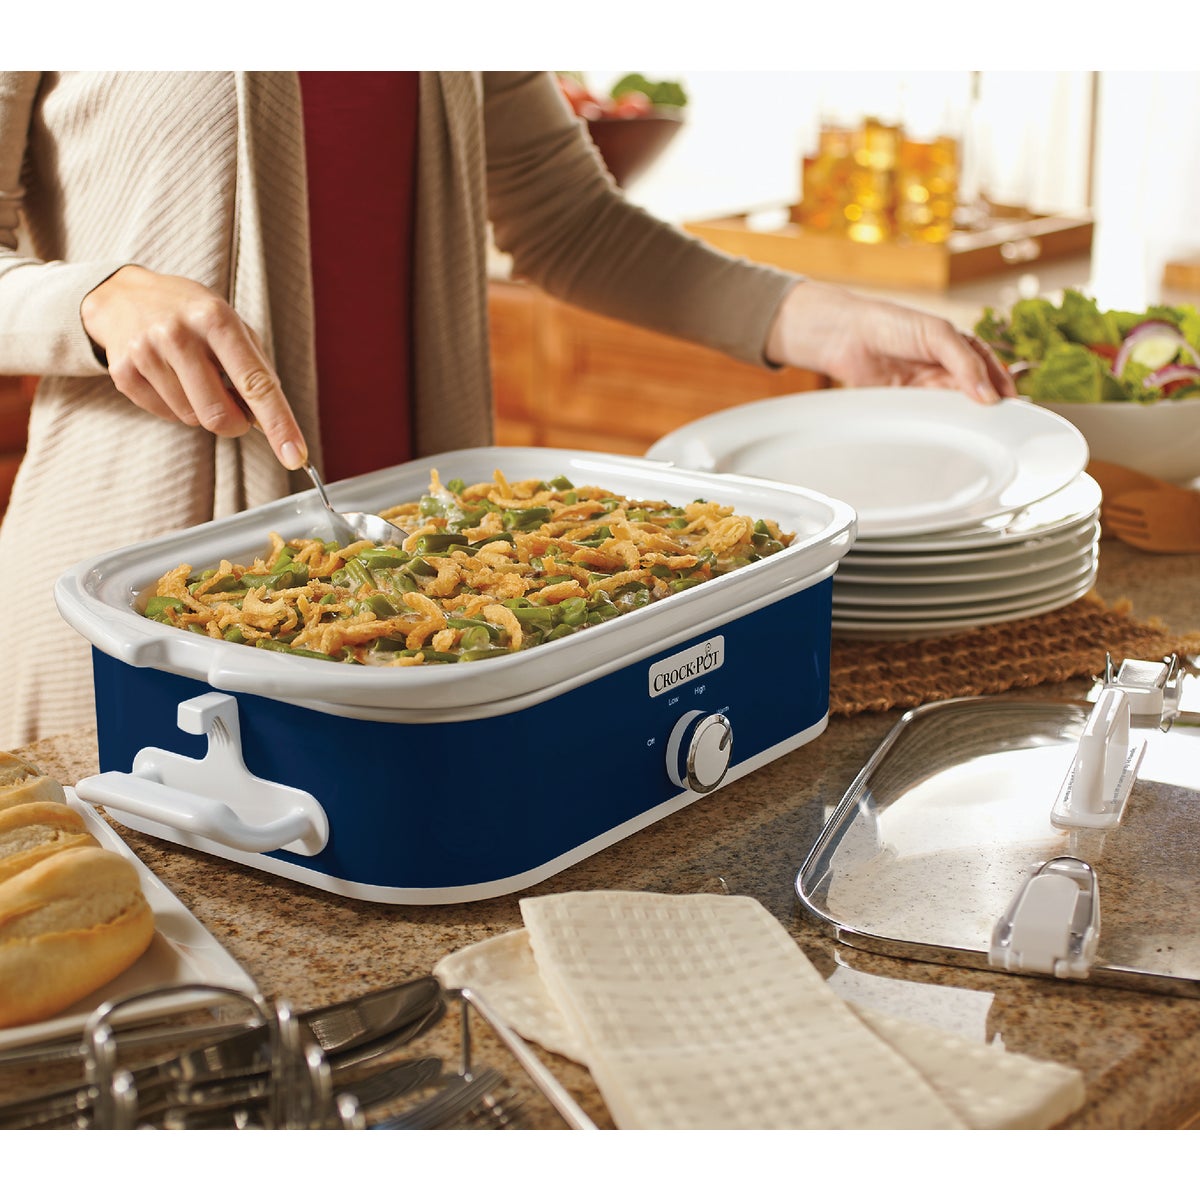  ICOOK Slow Cooker 3.5 Quart USC-351-OG,Dishwasher Safe